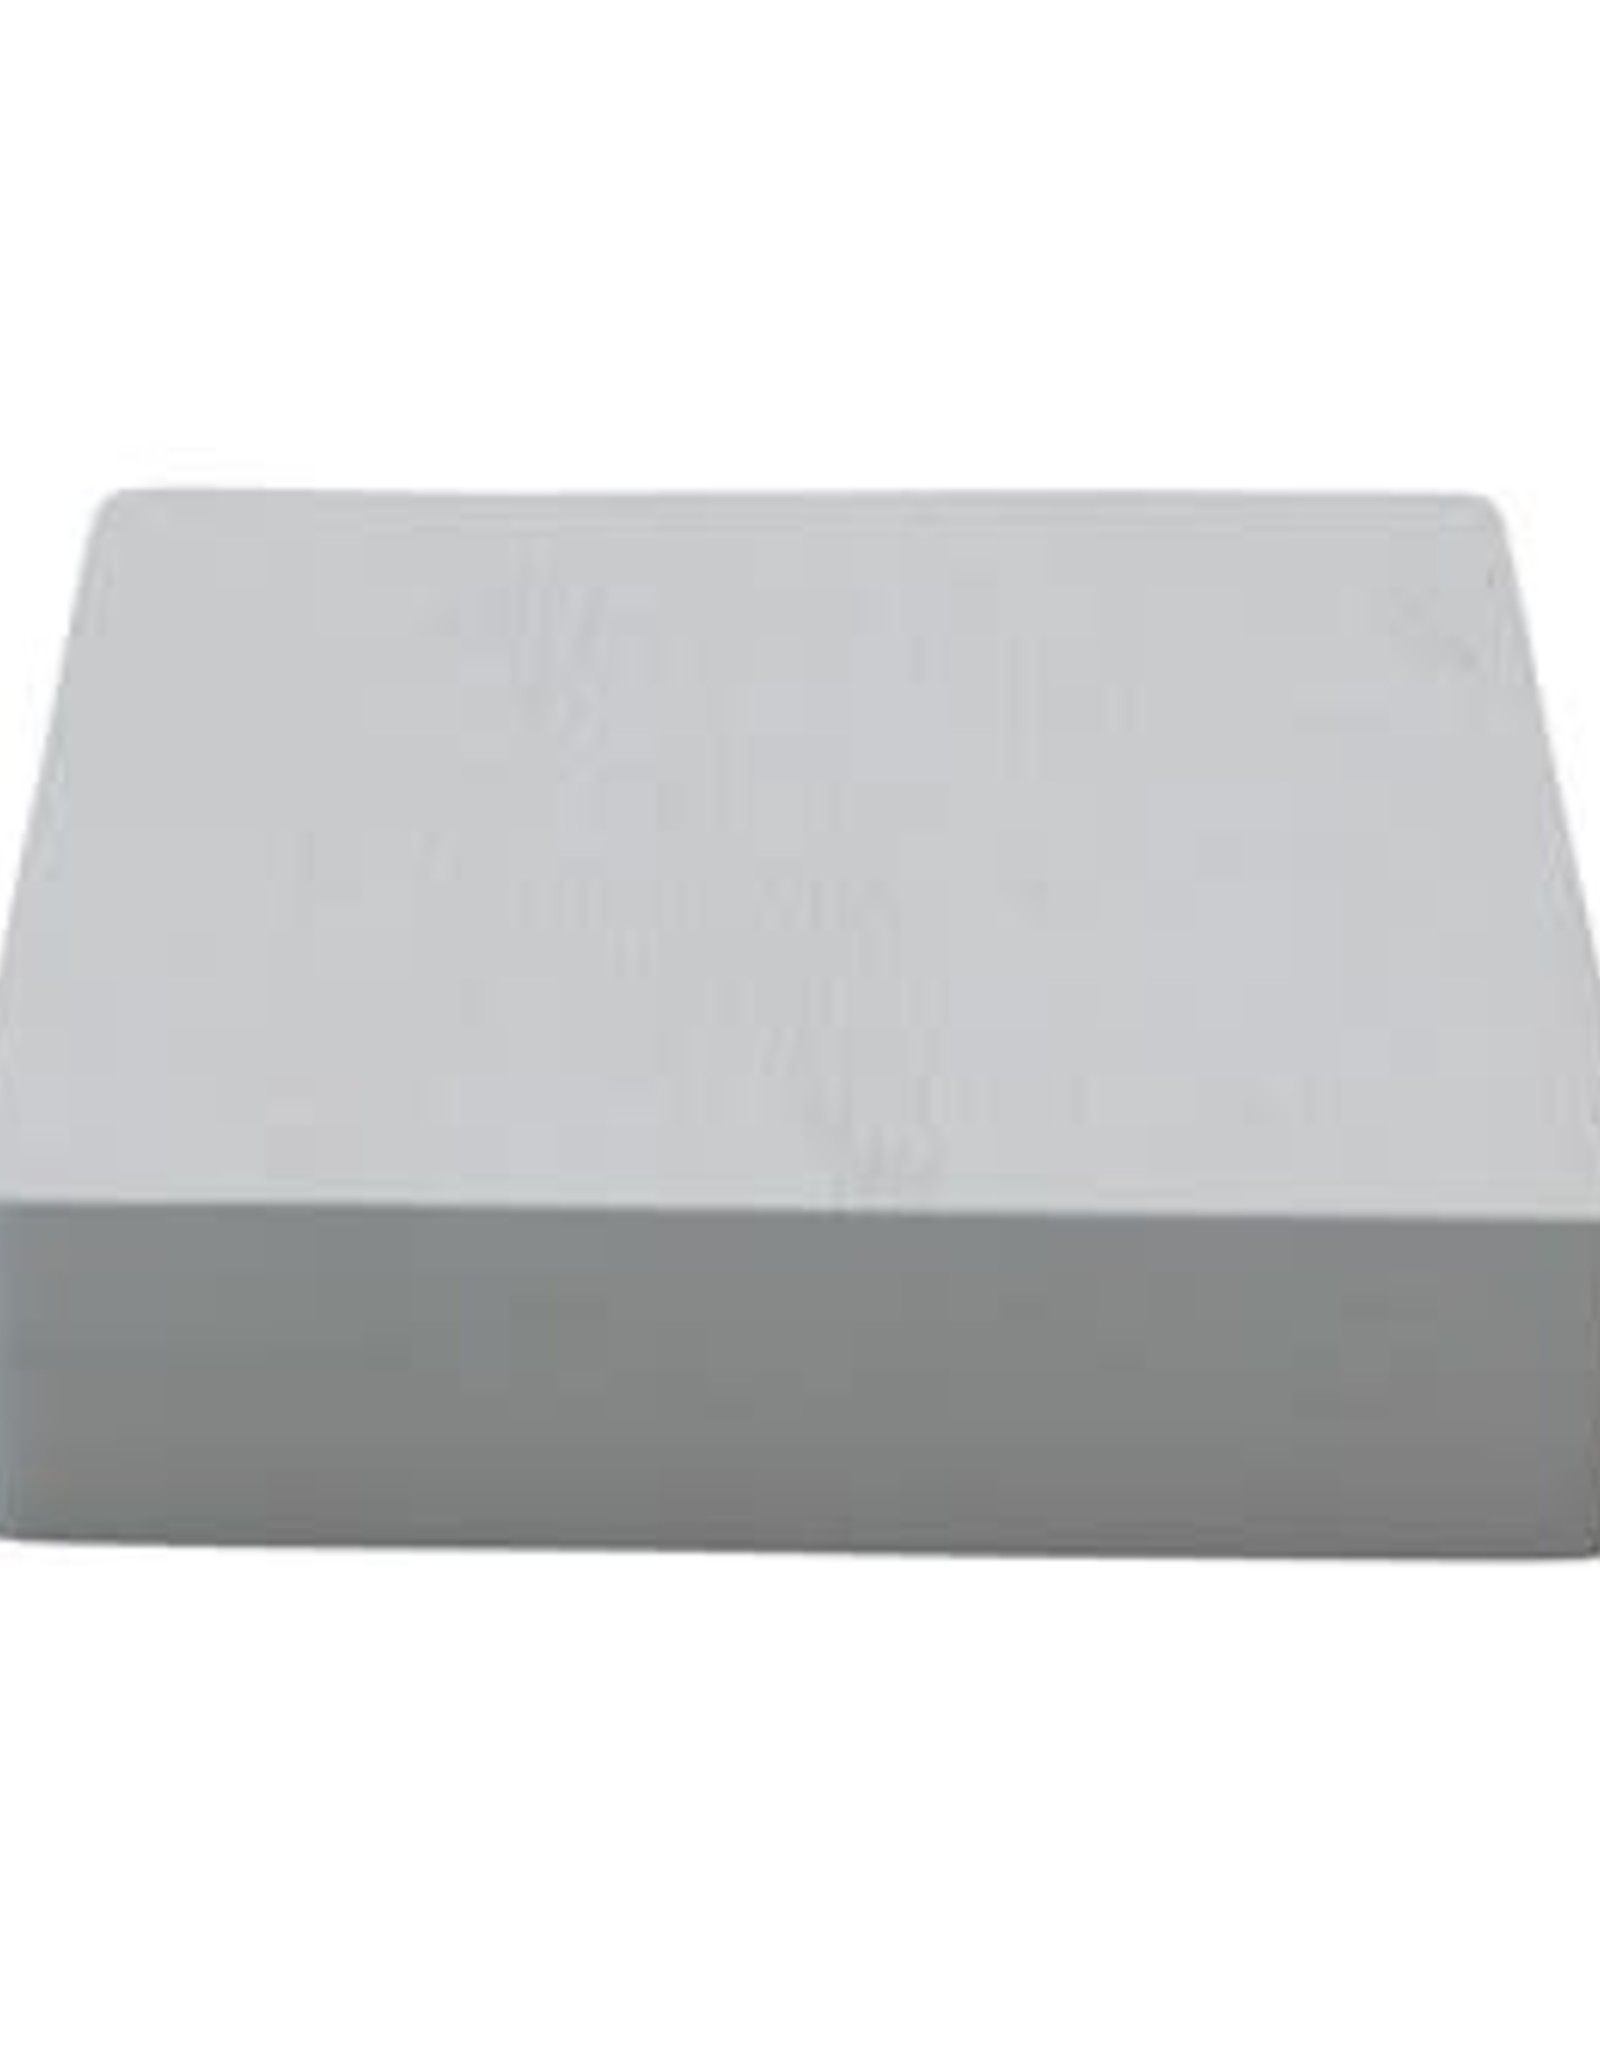 Combed White Finish Mango Wood Square Board L12" H2"